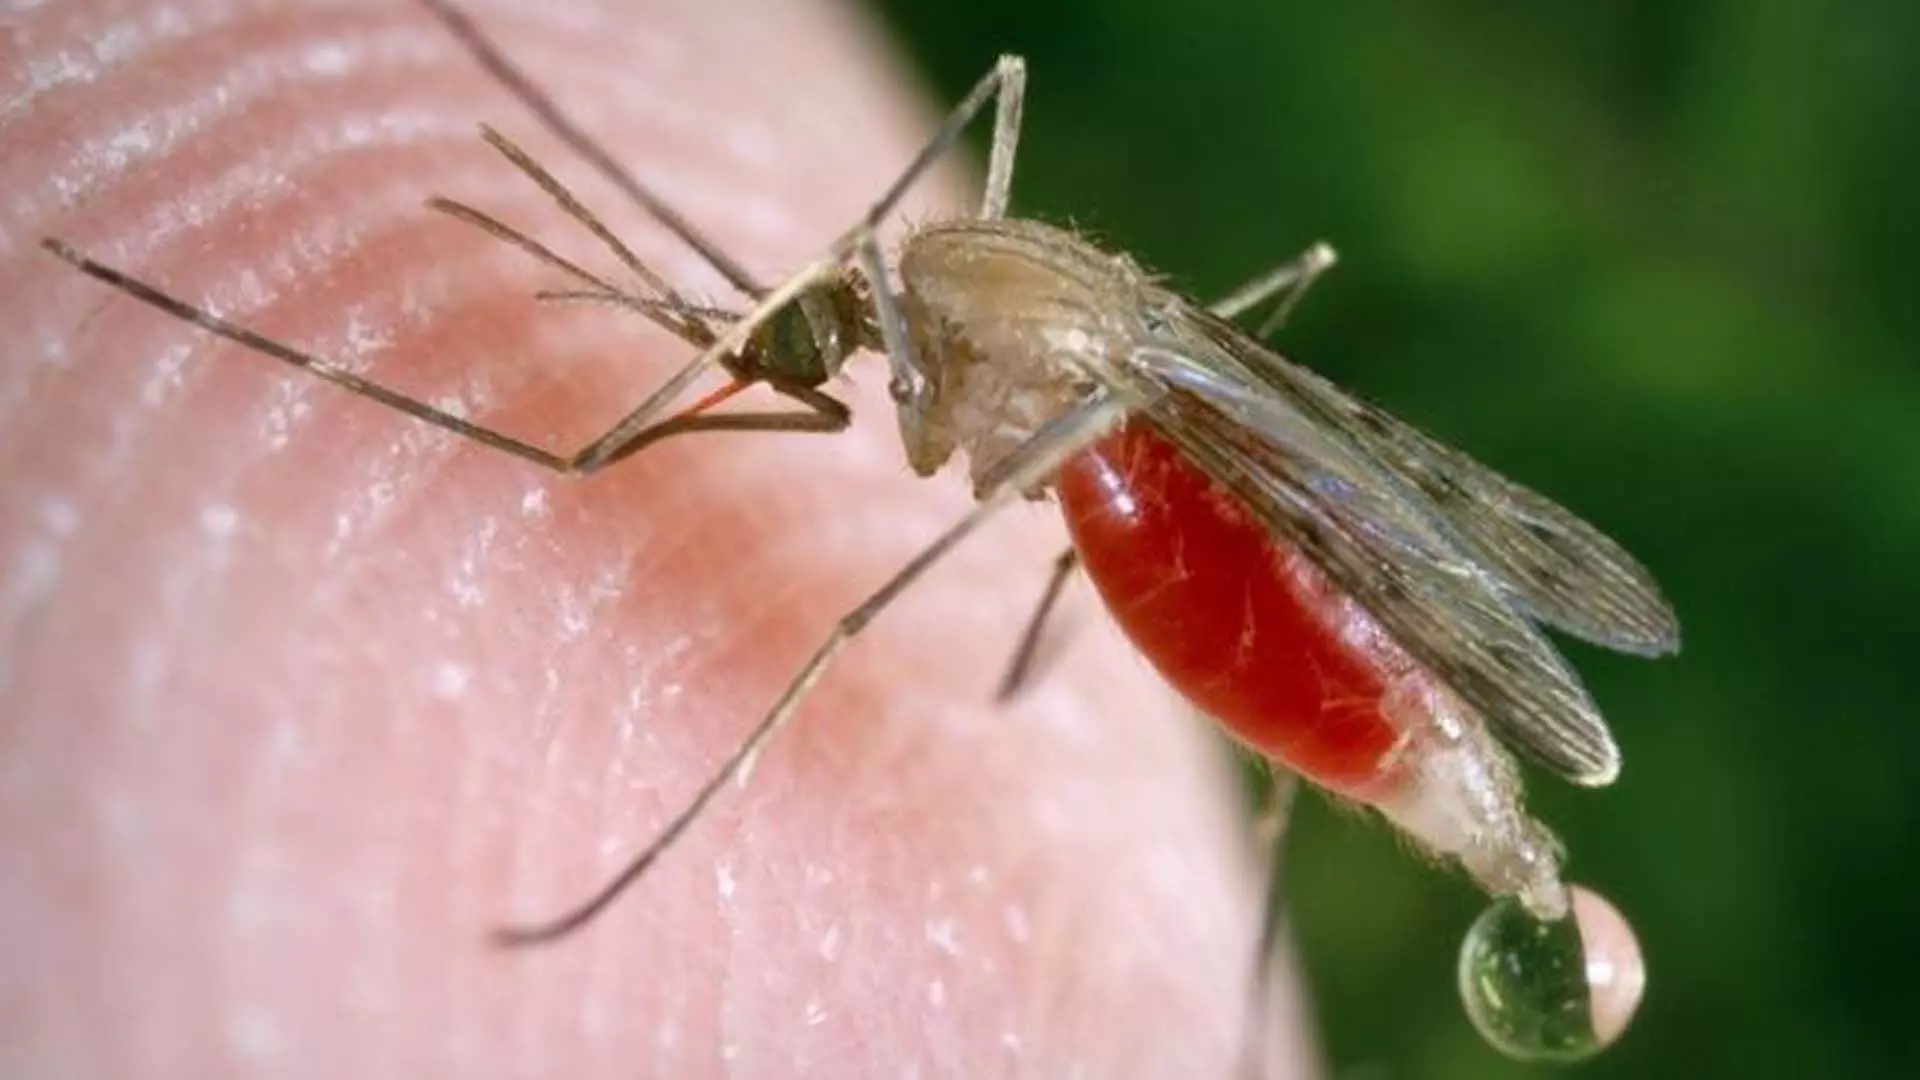 Odisha News: मलेरिया के मामलों में चिंताजनक वृद्धि देखी गई